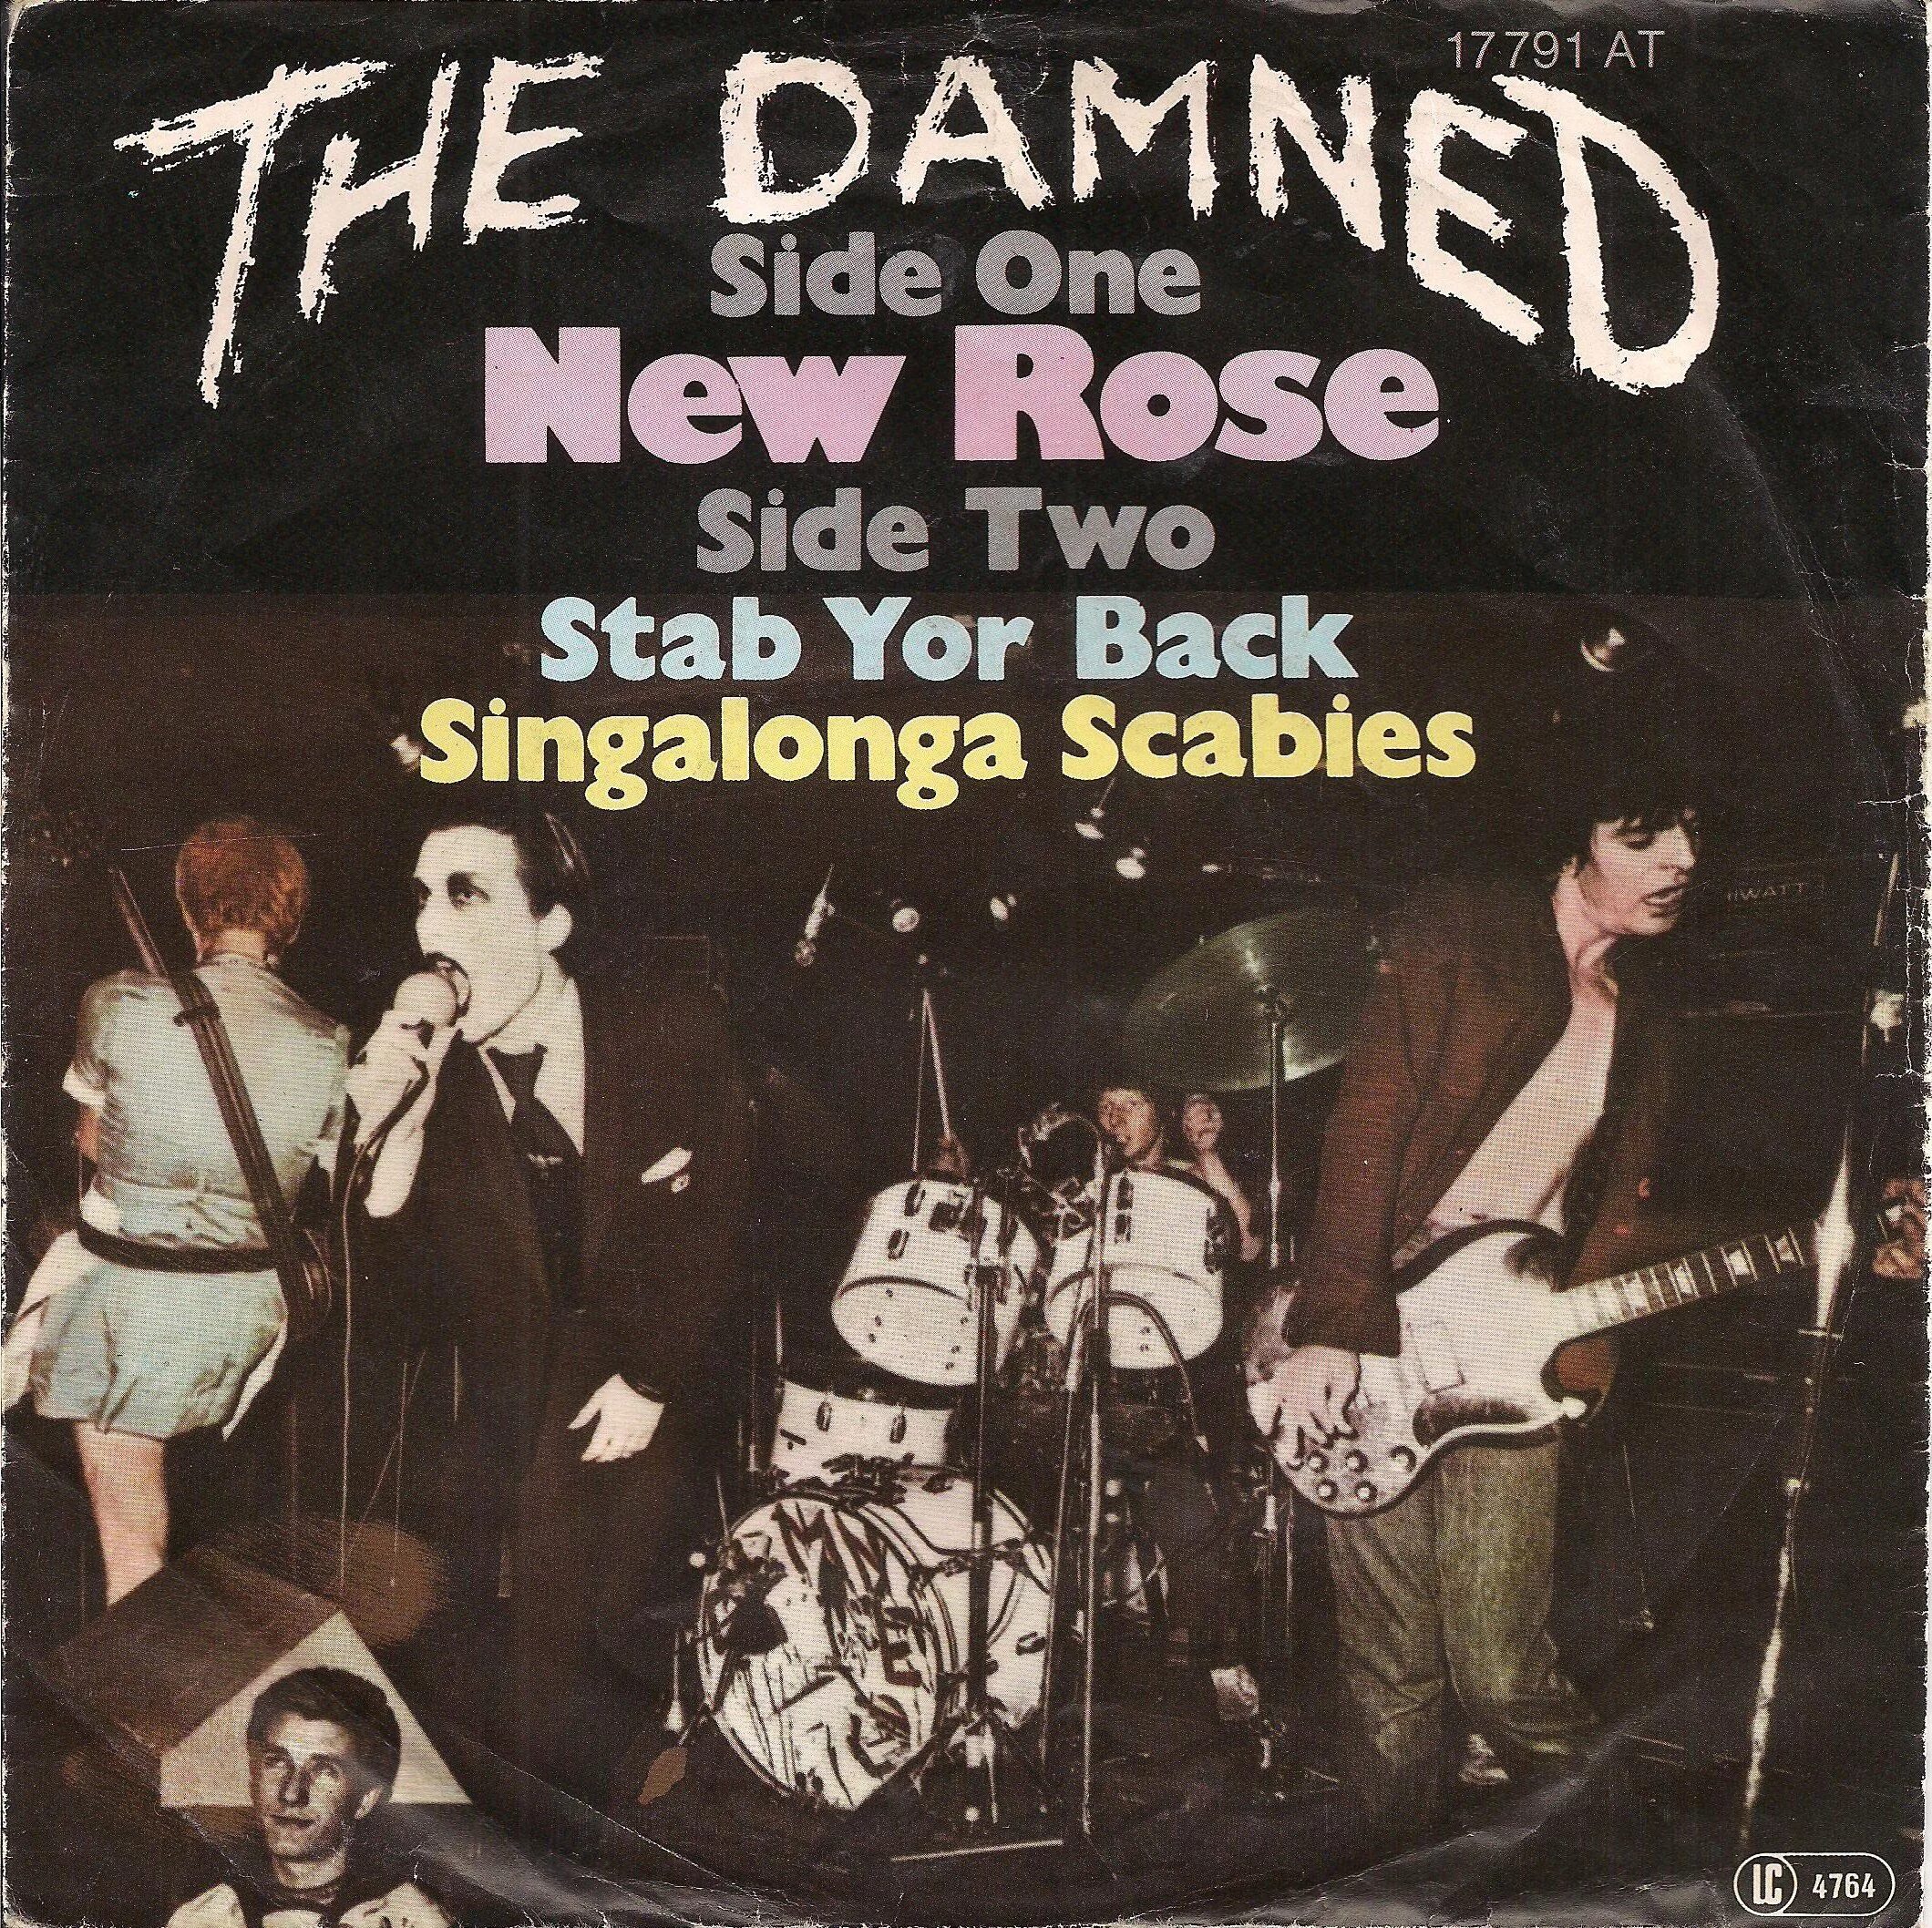 The Damned New Rose. The Damned Damned Damned Damned 1977. Панки группа the Damned - «New Rose»,. The Damned ранние концерты.